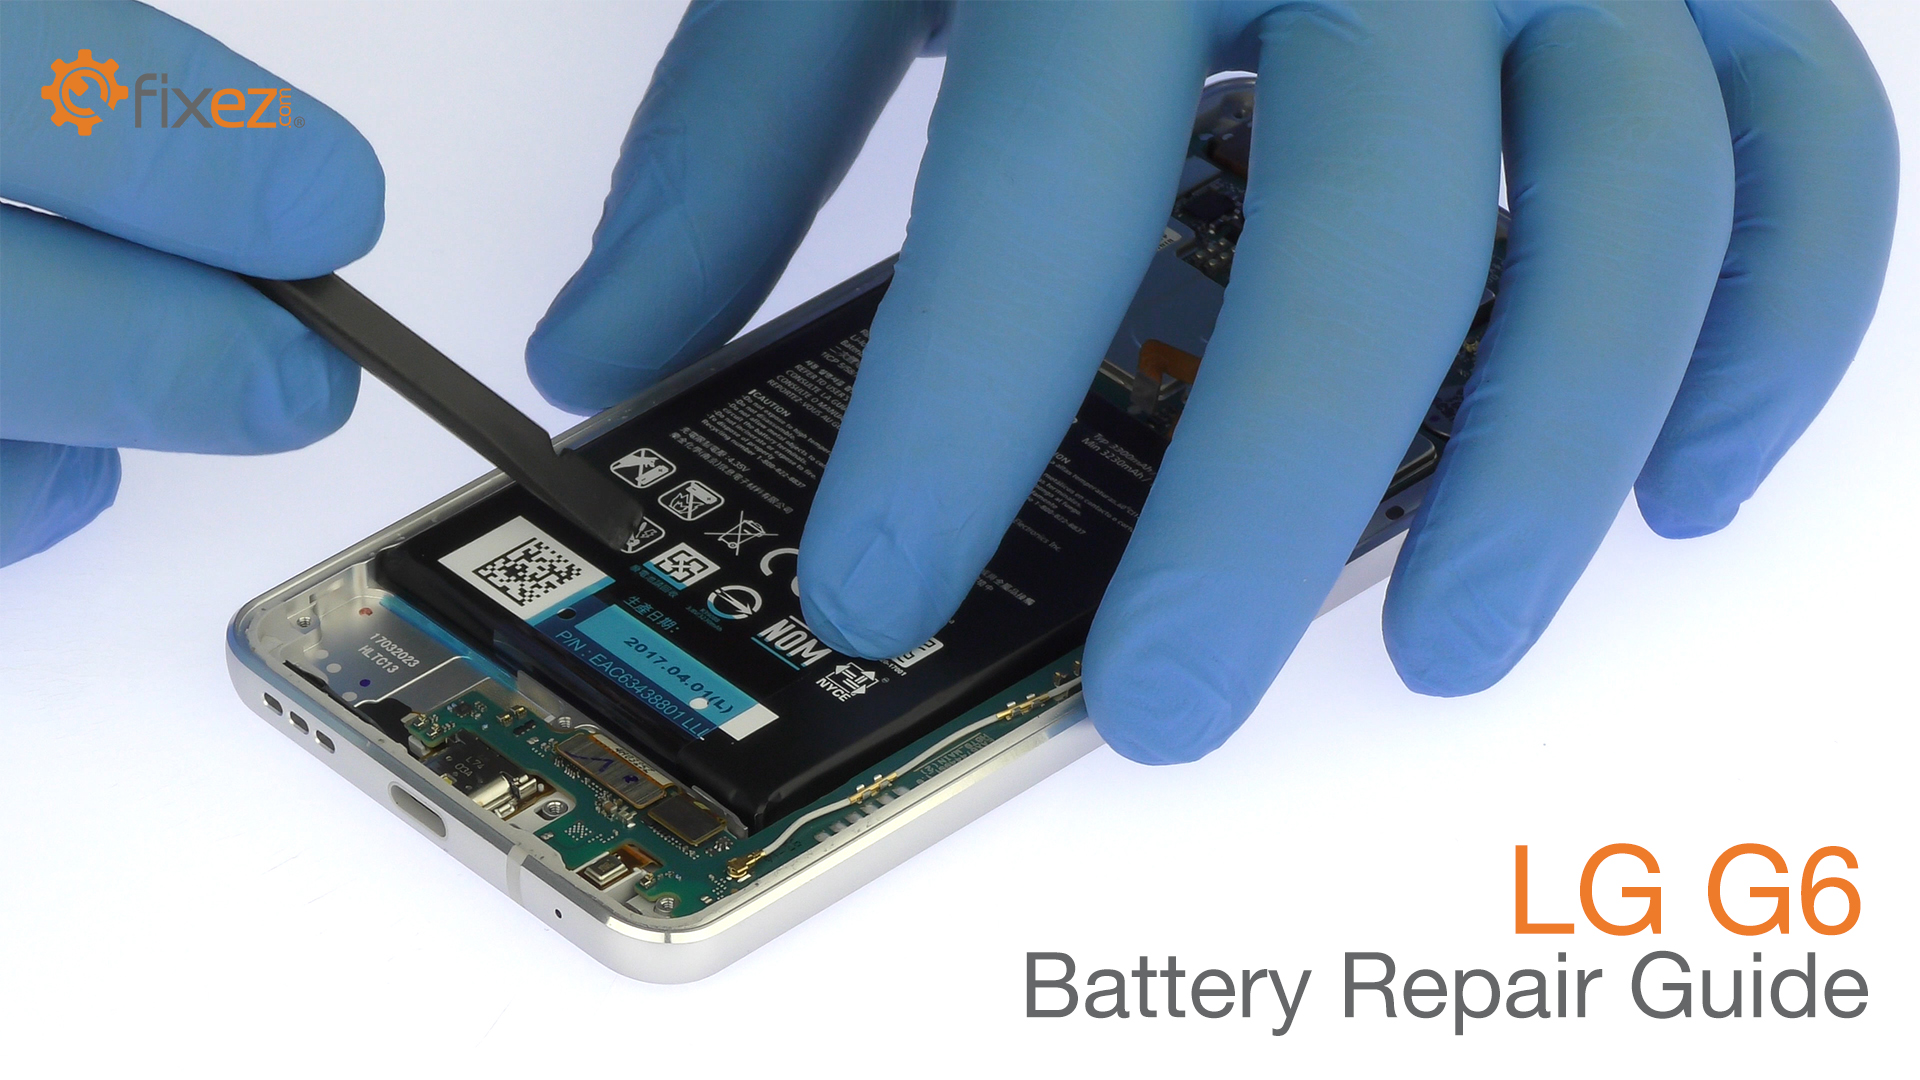 LG G6 Battery Repair